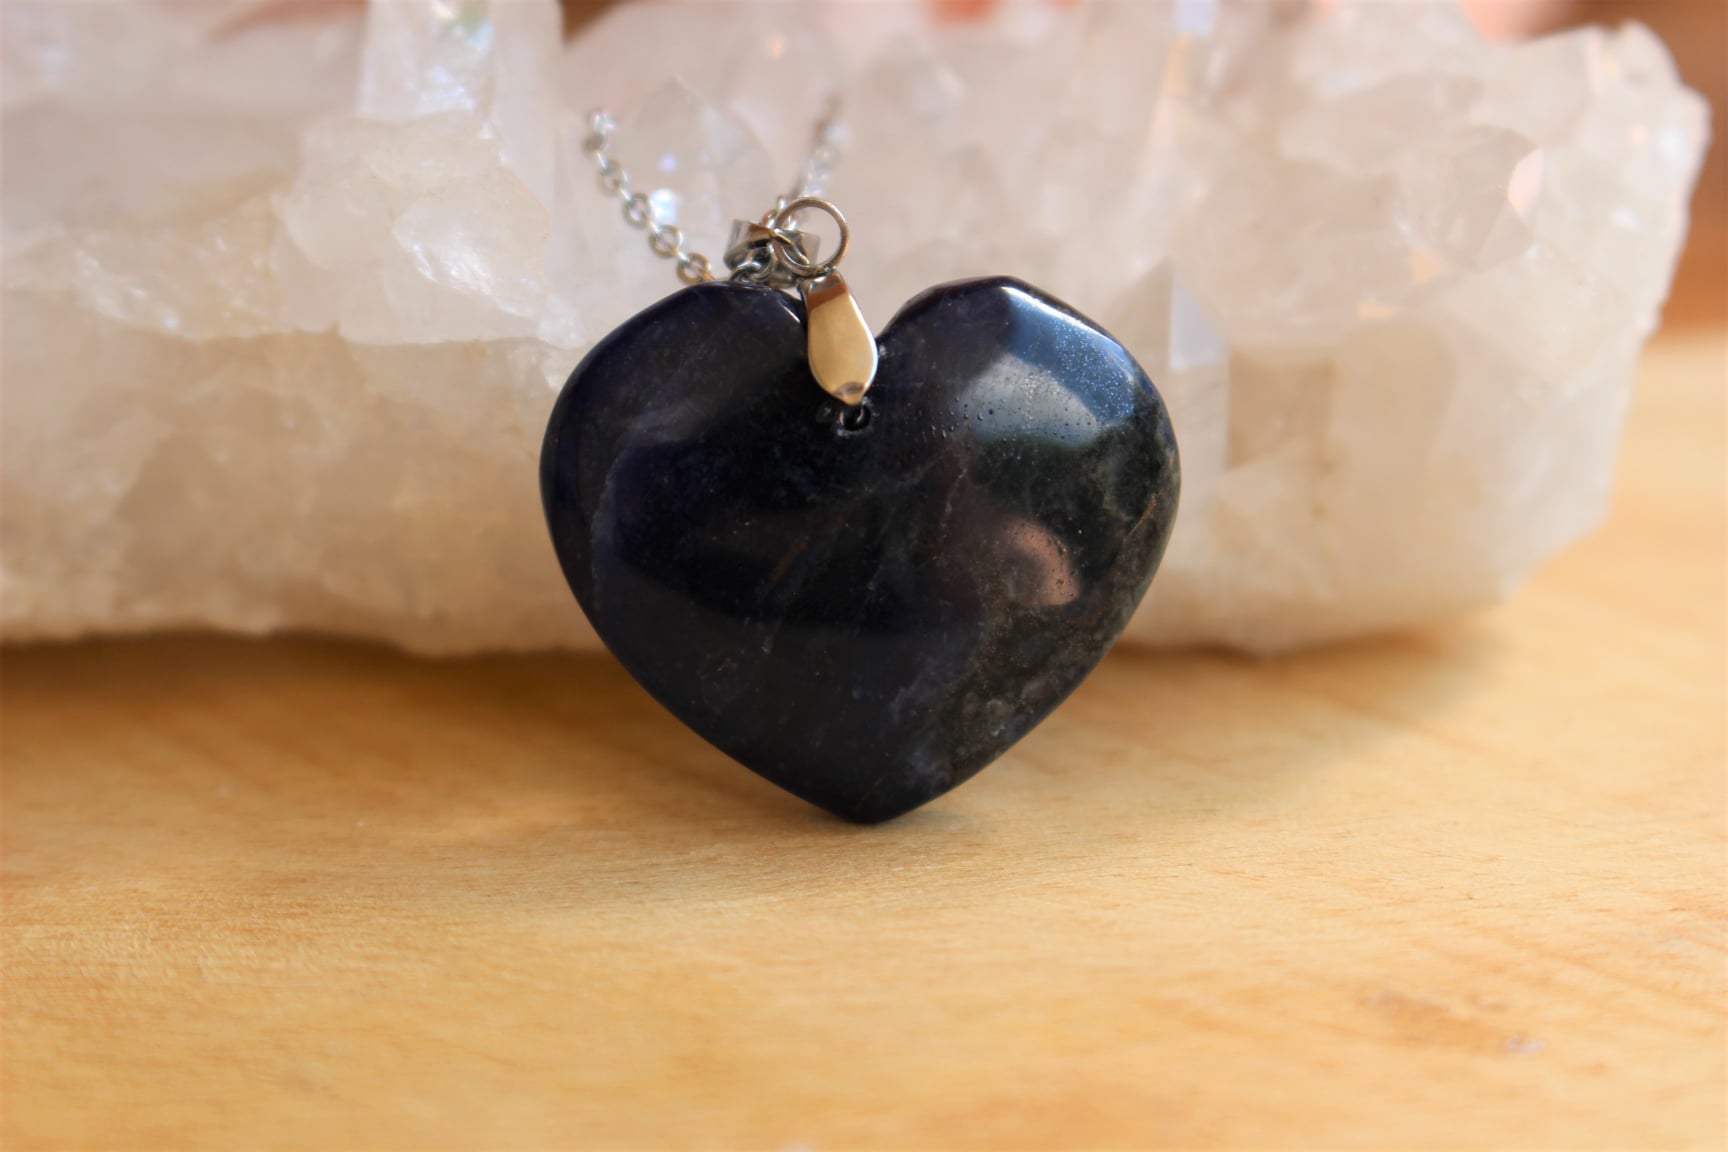 pendentif coeur en sodalite pierre naturelle lithothérapie bijoux fait main made in france handmade collier la voie minérale cadeau femme